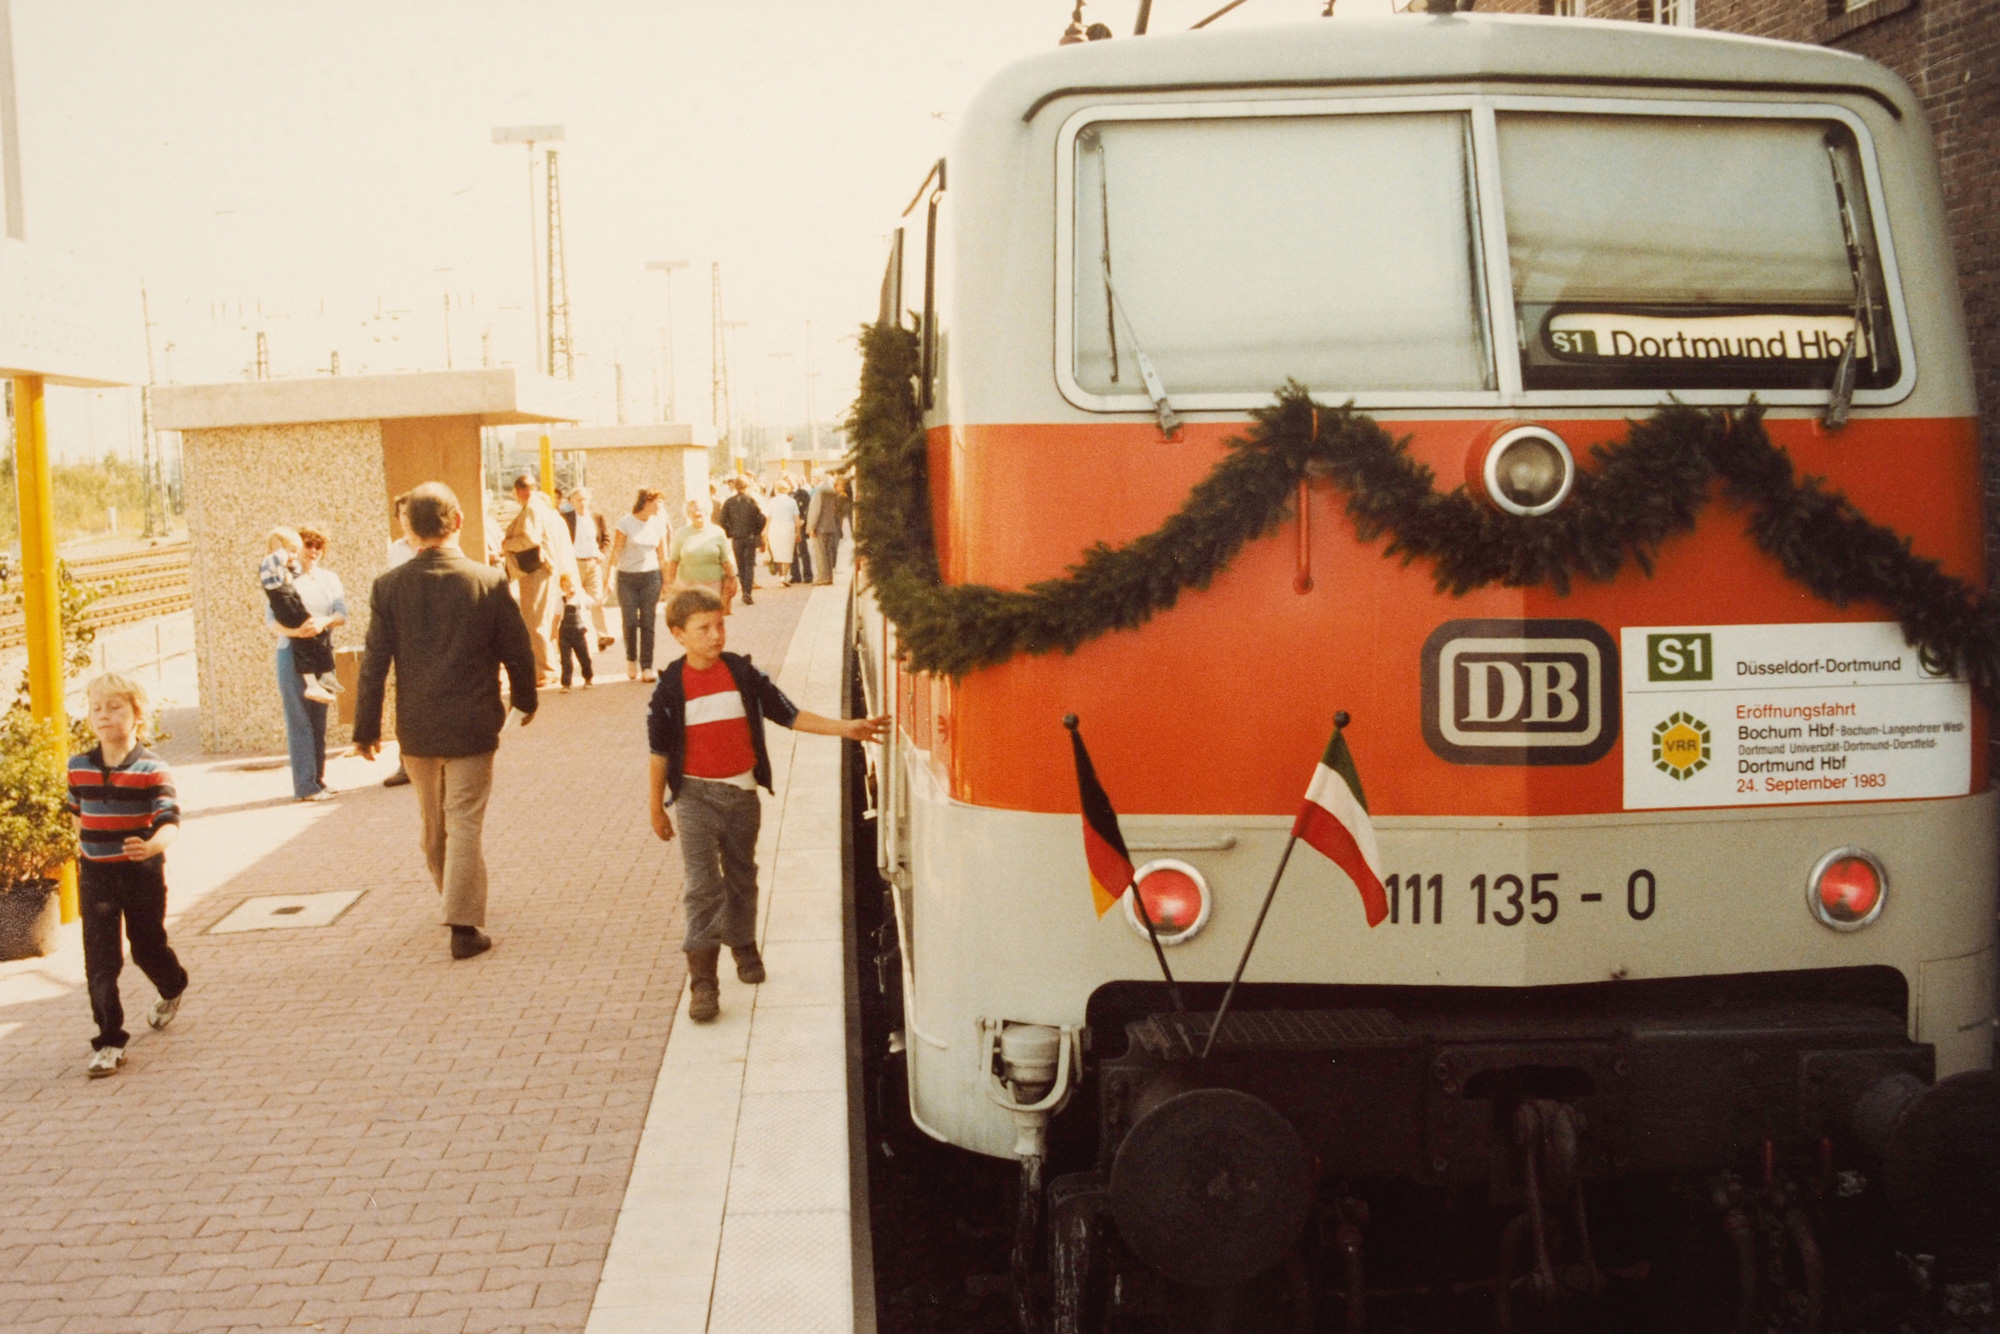 Fotoaufnahmen der alten S-Bahn Rhein-Ruhr aus den 1970er Jahren